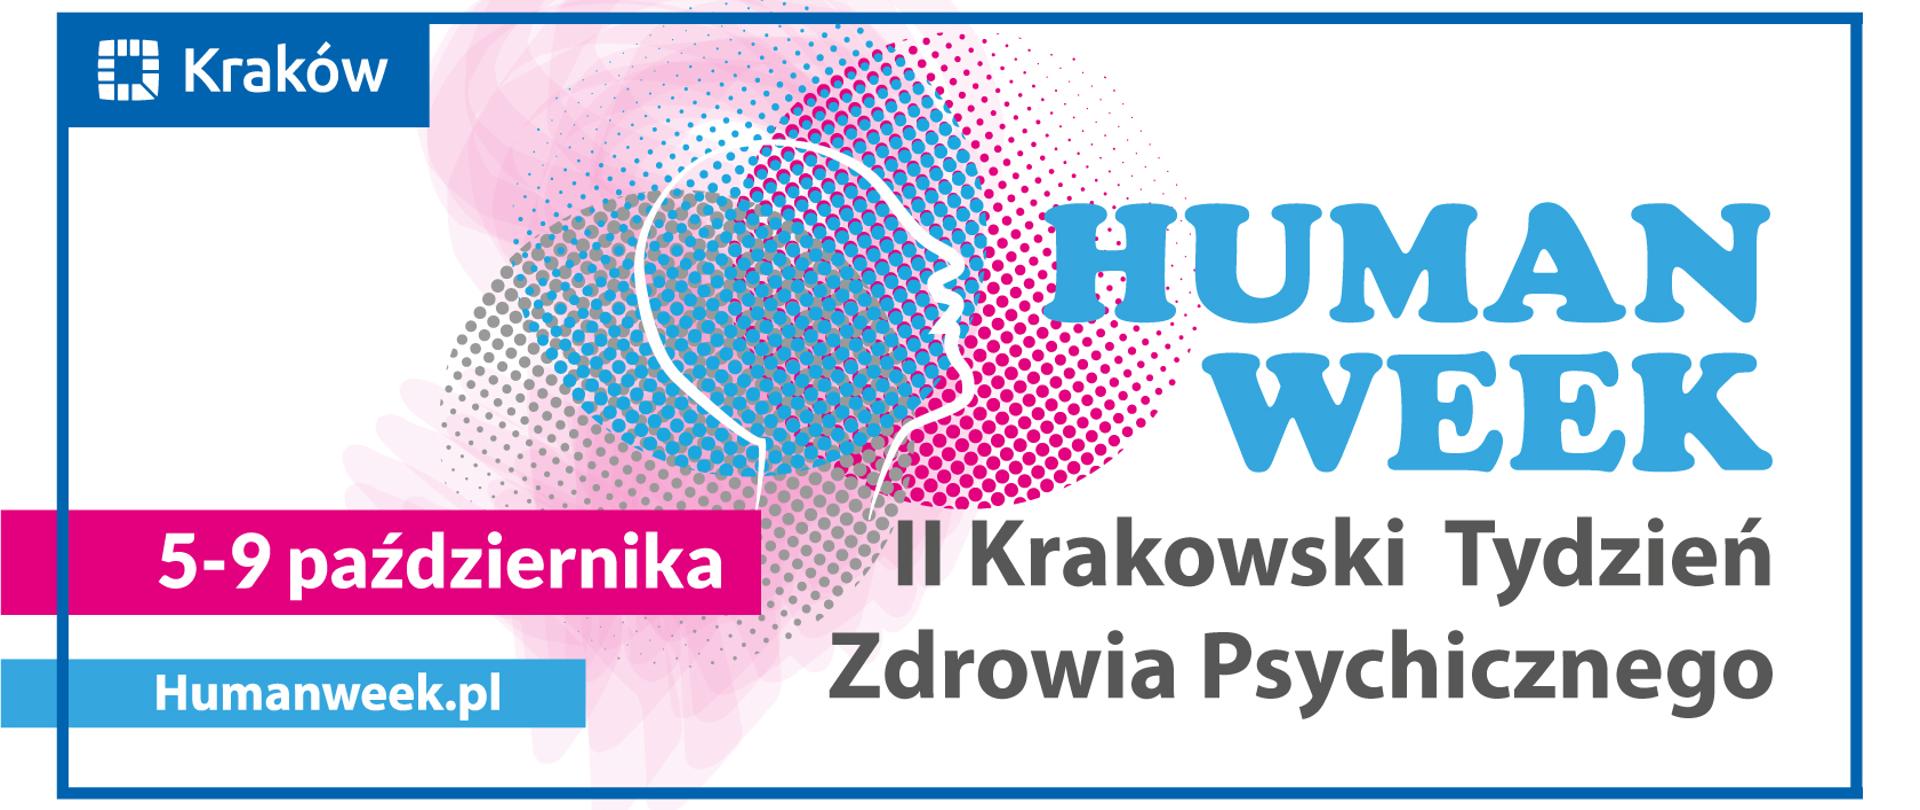 2 krakowski tydzień zdrowia